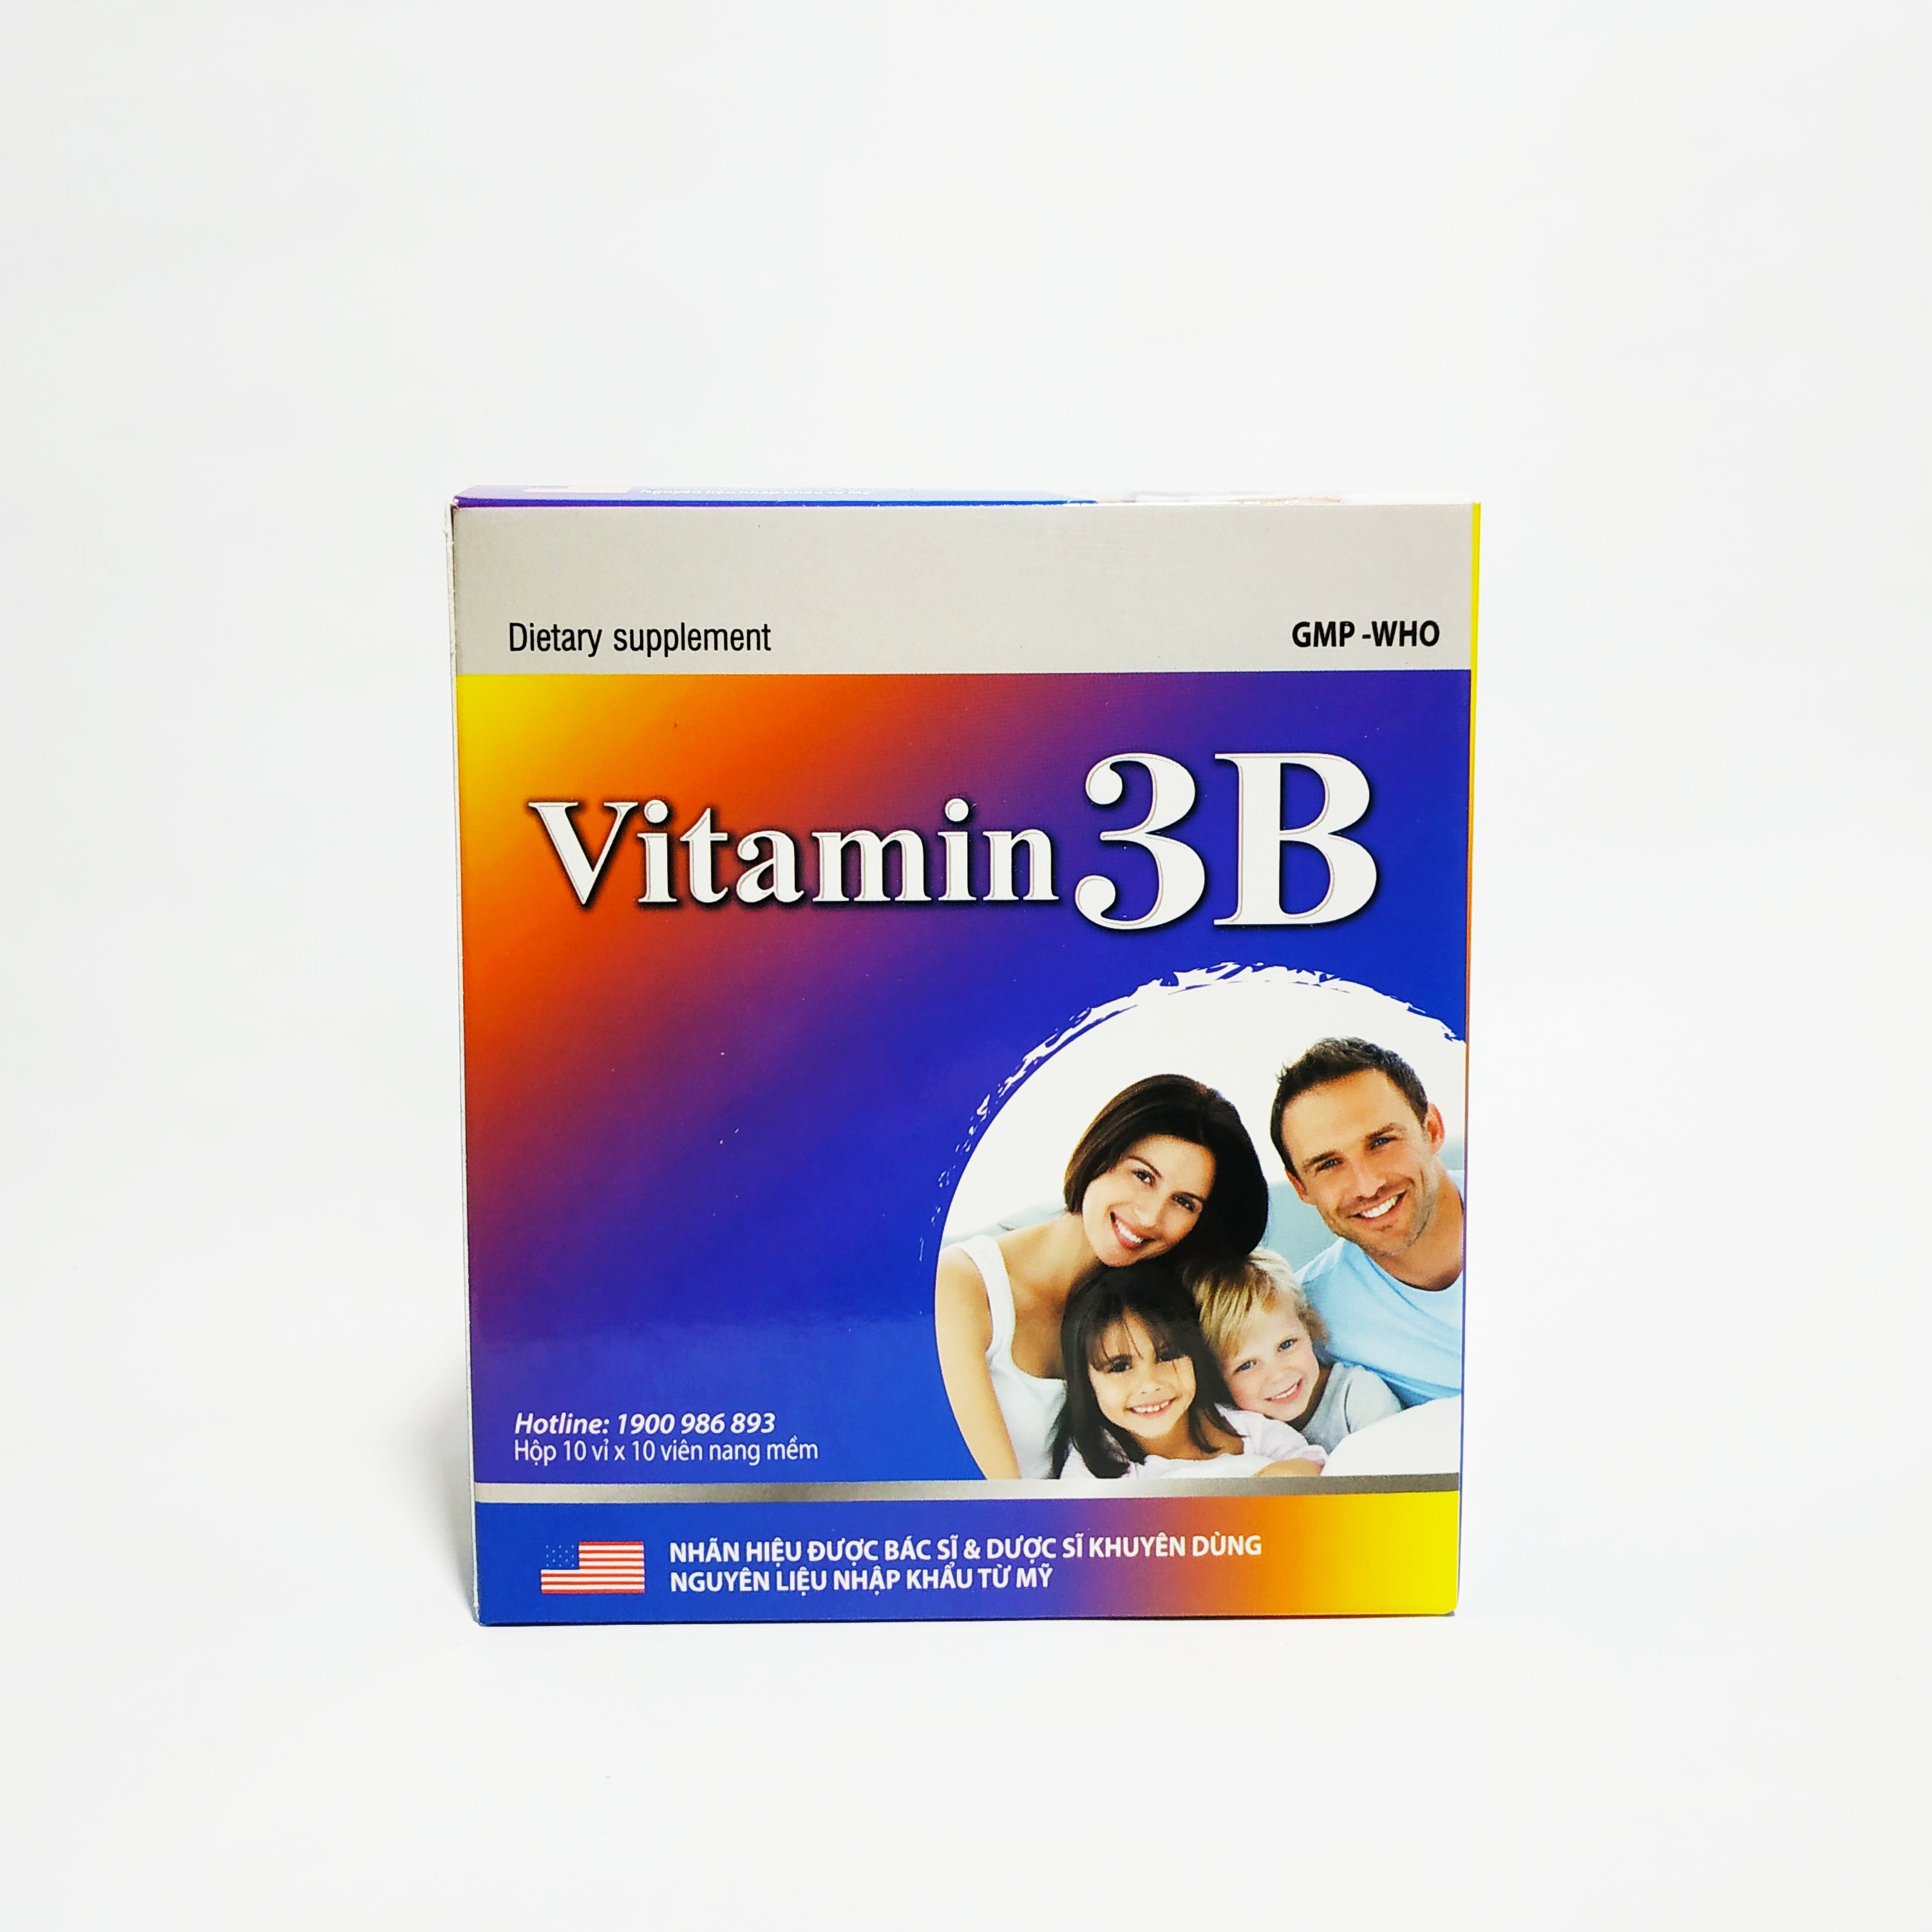 Vitamin 3B Nguyên Liệu Nhập Khẩu Mỹ - Bổ Sung Các Vitamin Nhóm B - Bồi Bổ Sức Khỏe - Giảm Đau Dây Thần Kinh - Hộp 100 Viên